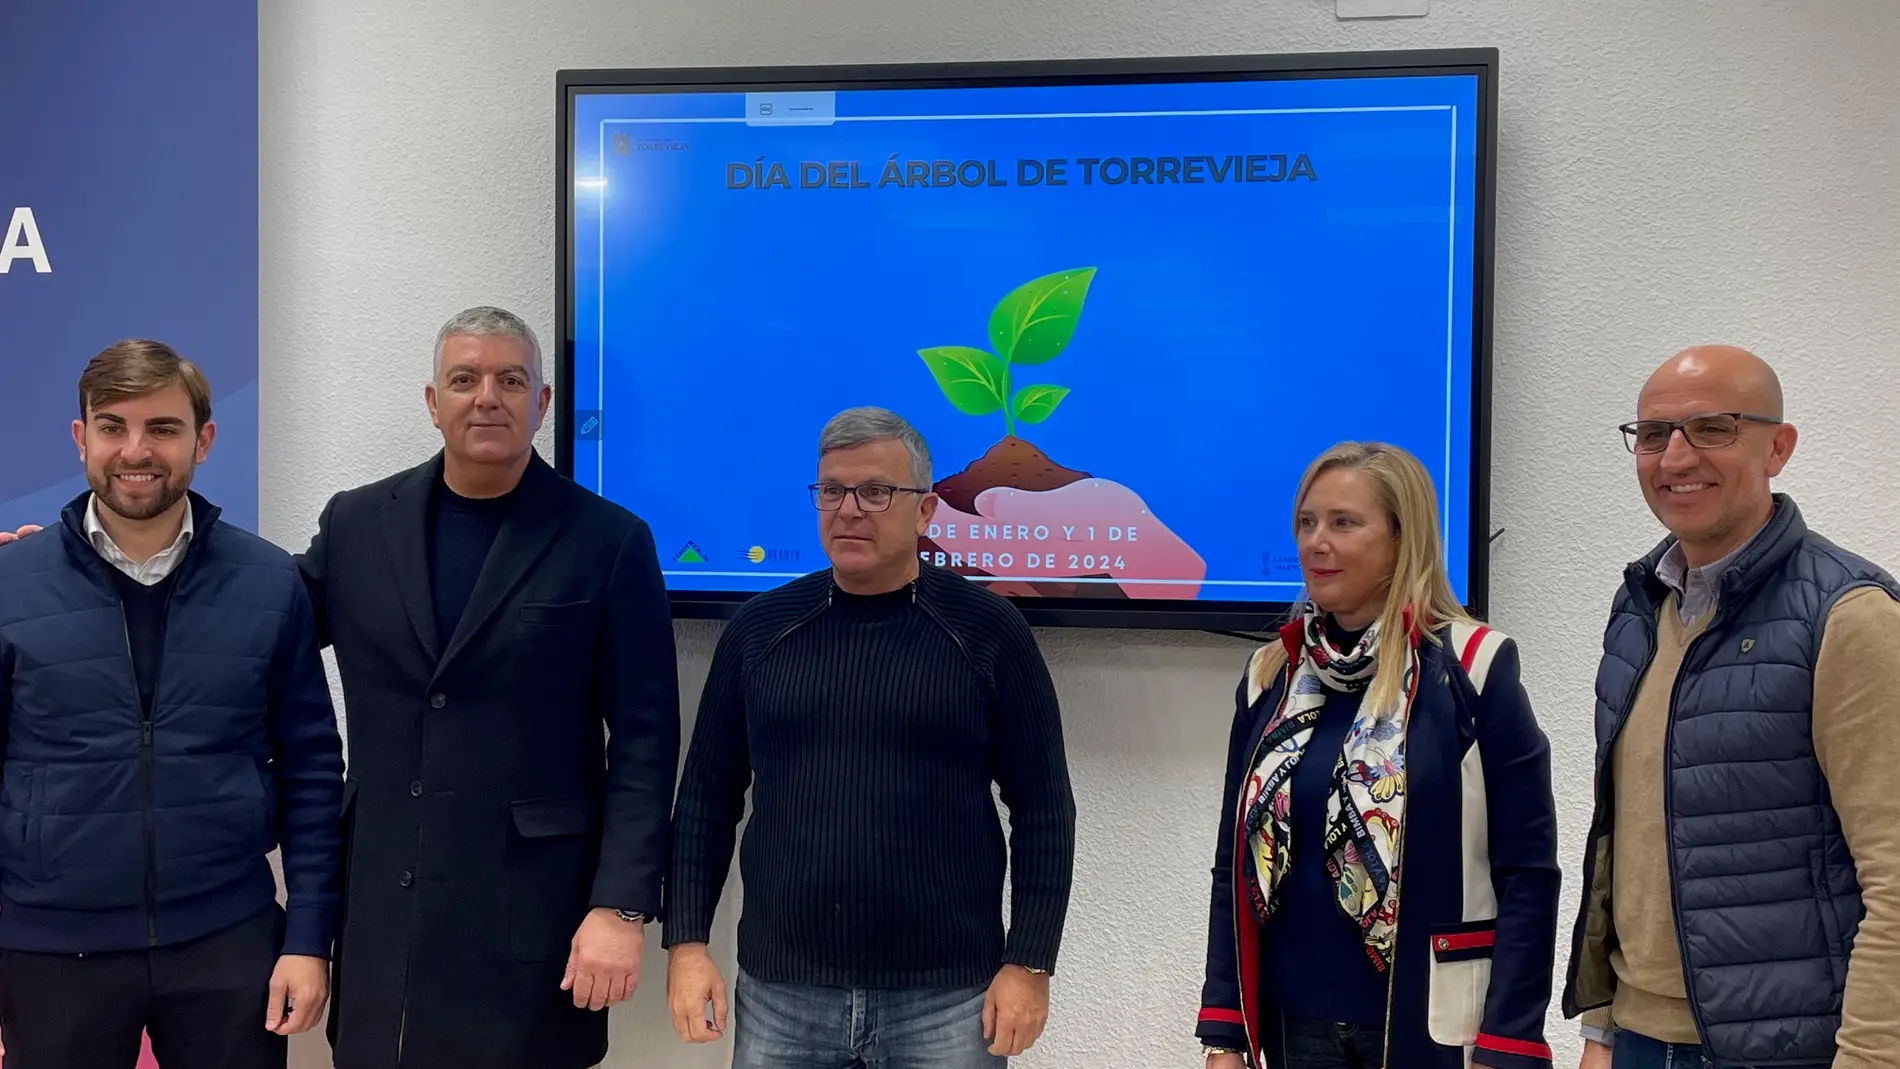 Torrevieja presenta las actividades con motivo del "Día del árbol" 2024 